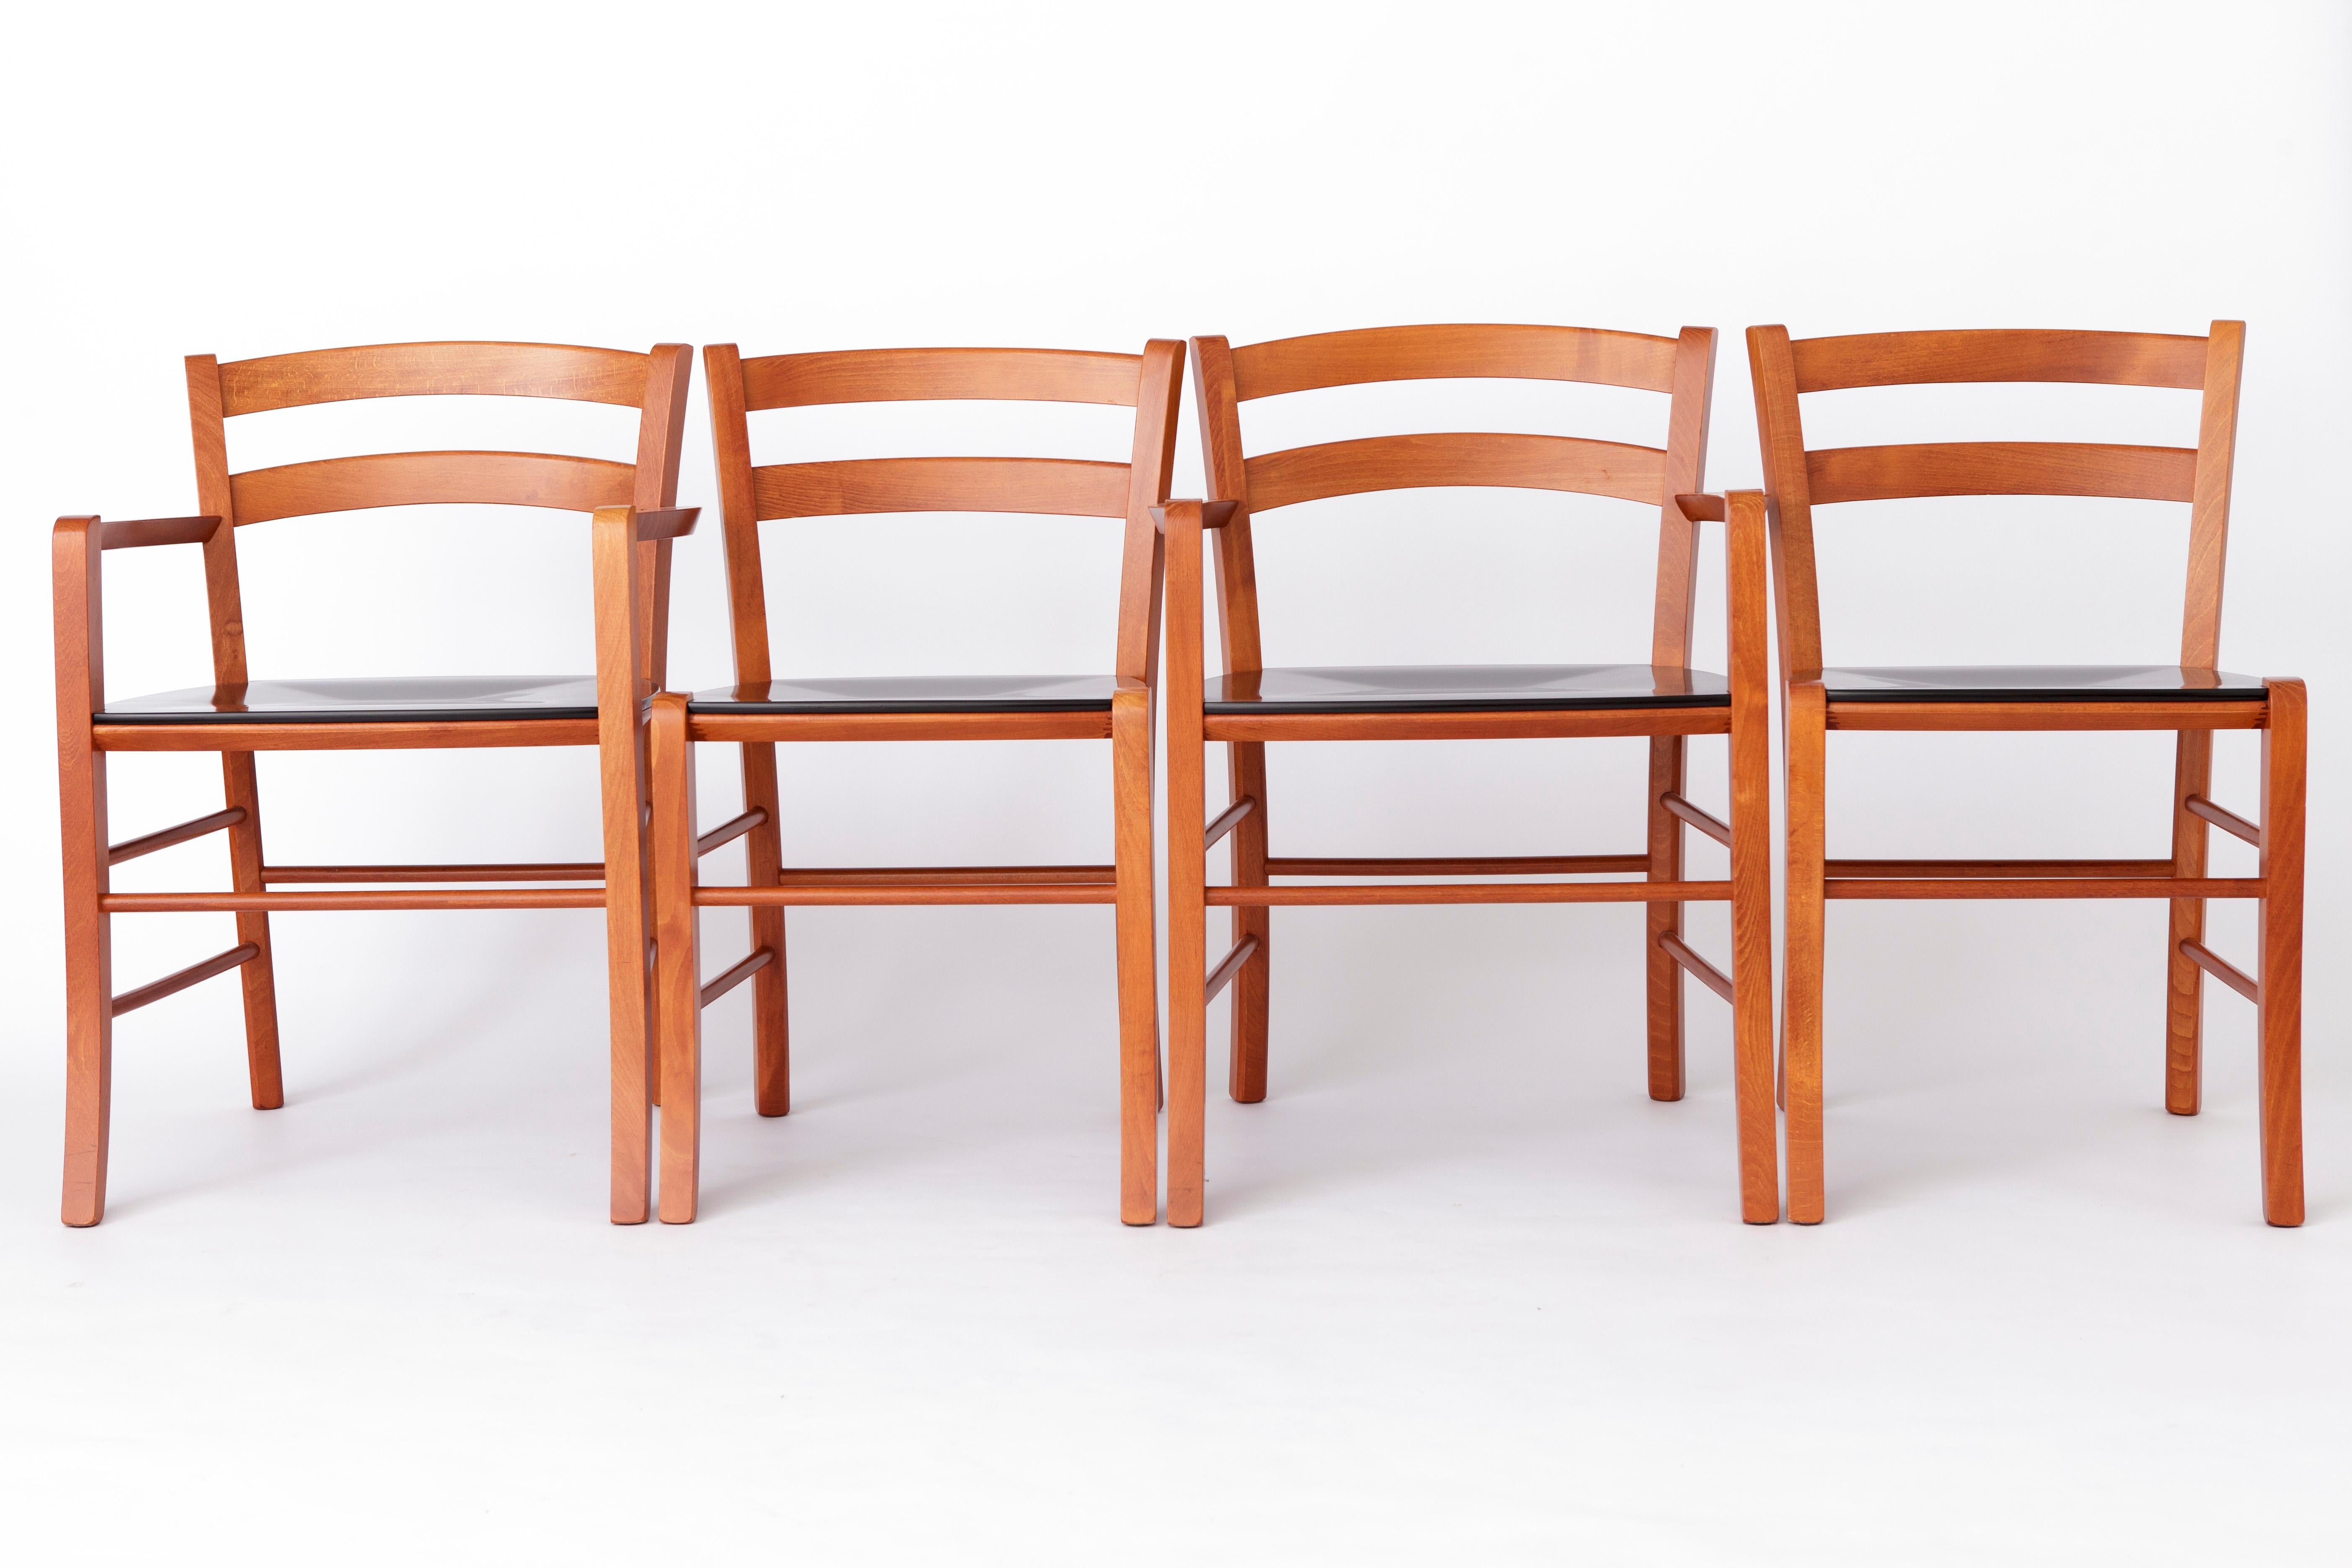 Satz von 4 italienischen Vintage-Stühlen aus den 1980er Jahren. 
Hersteller: De Padova, Italien. Modell: Marocca
Der angezeigte Preis gilt für ein 4er-Set (2 Sessel + 2 Beistellstühle). 

Stabiler Rahmen aus Buchenholz. 
Der Sitz ist mit schwarzem